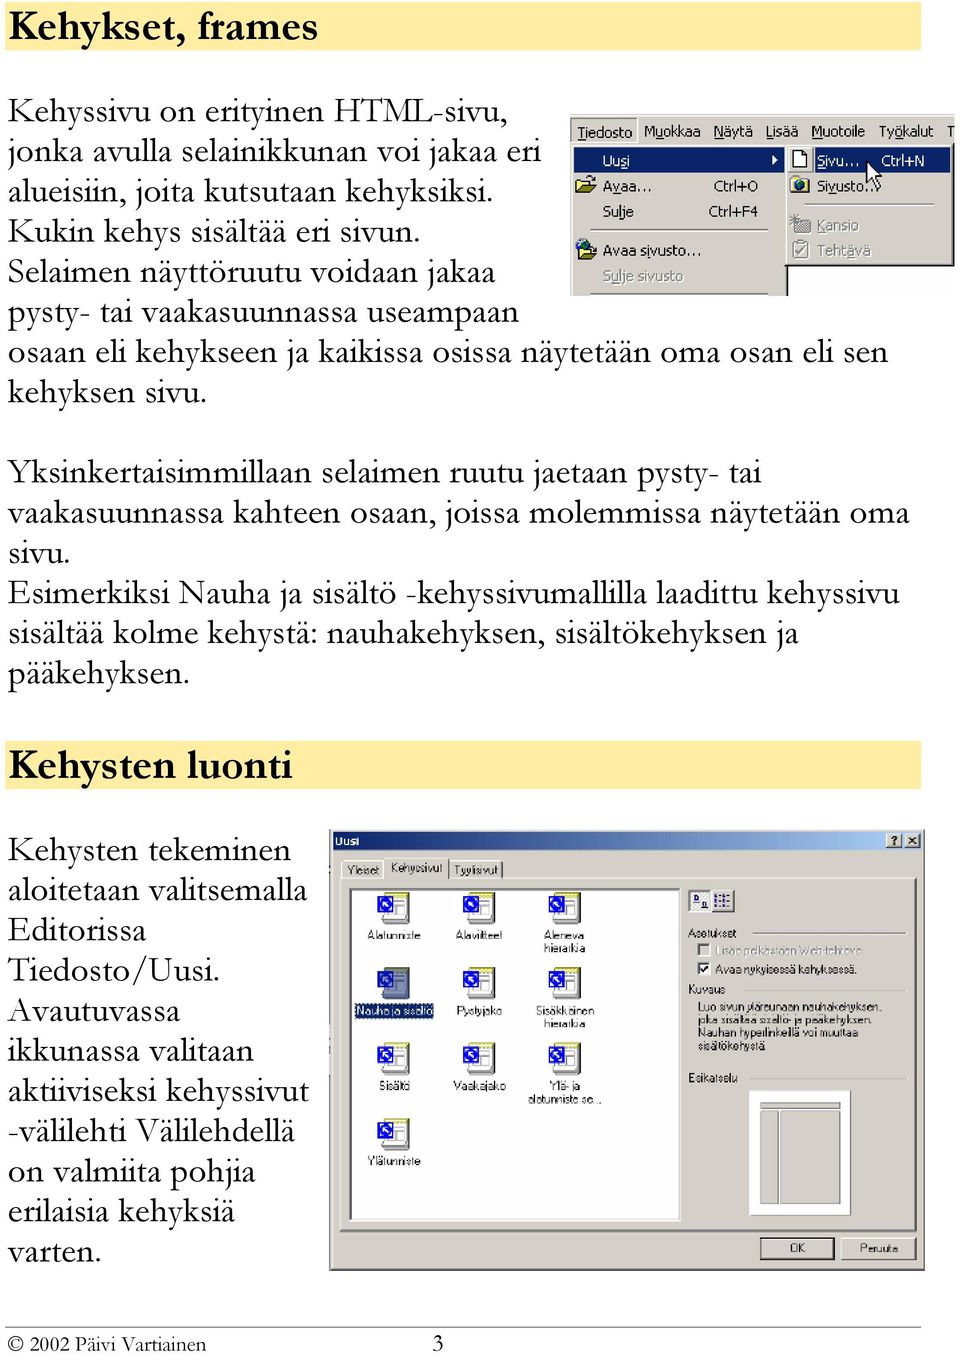 Yksinkertaisimmillaan selaimen ruutu jaetaan pysty- tai vaakasuunnassa kahteen osaan, joissa molemmissa näytetään oma sivu.